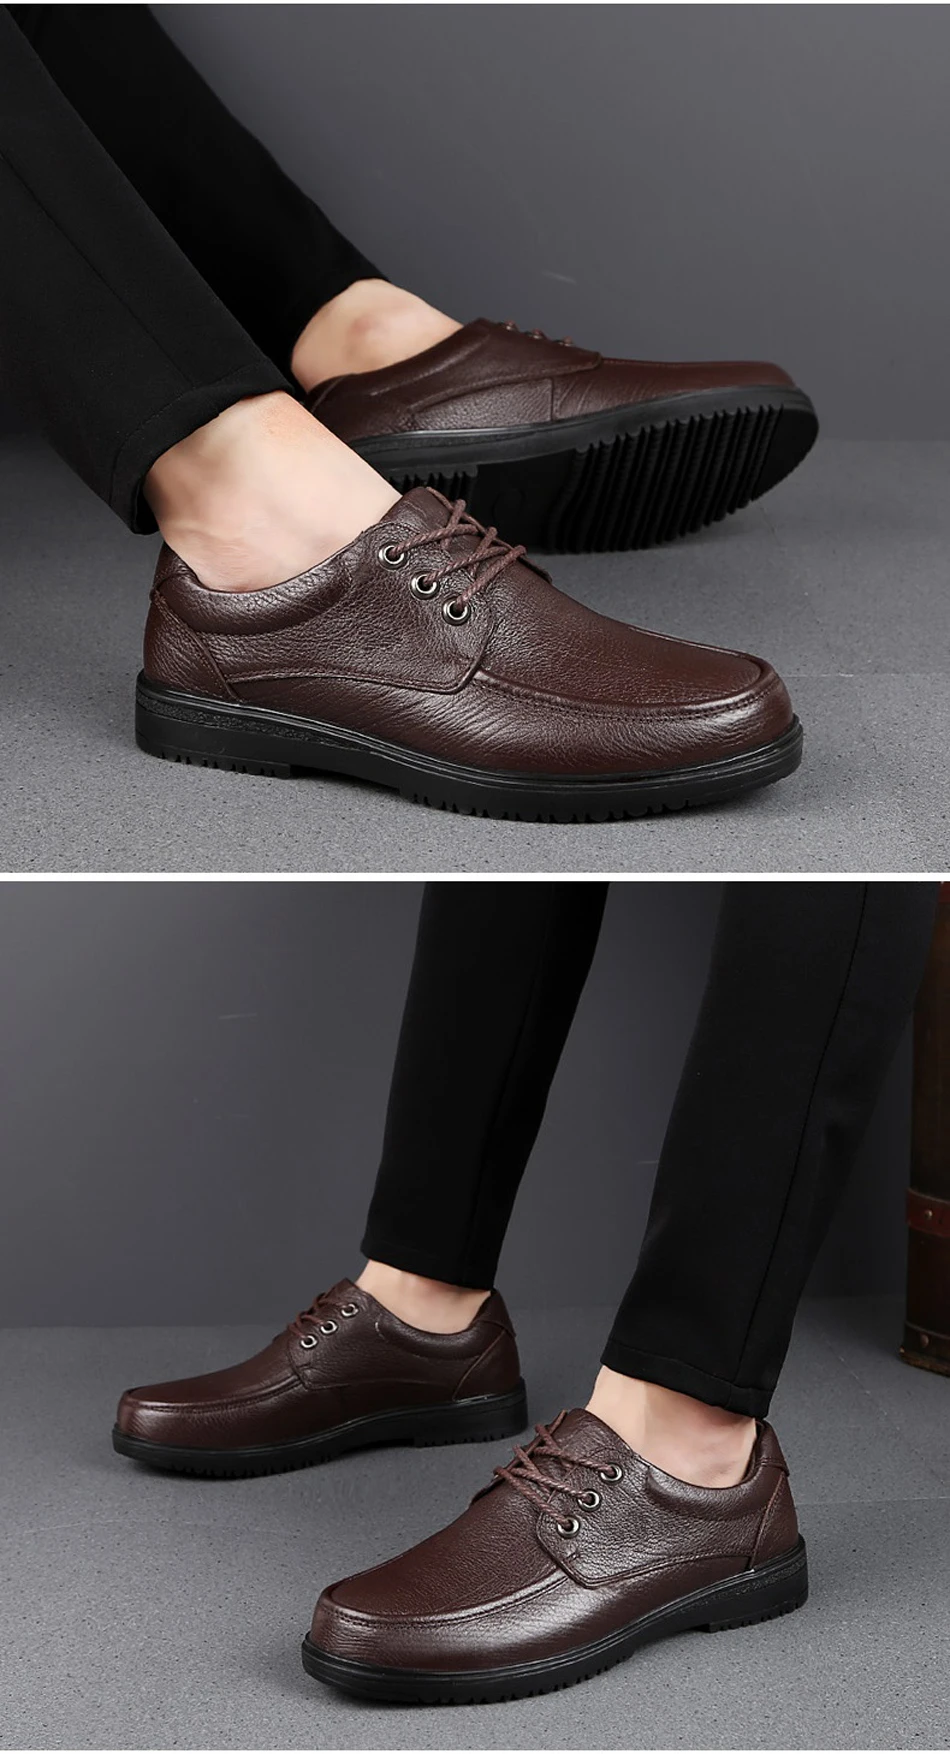 2019 Новые Мужские модельные туфли из натуральной кожи, классические черные и коричневые туфли из коровьей кожи, мужские деловые туфли